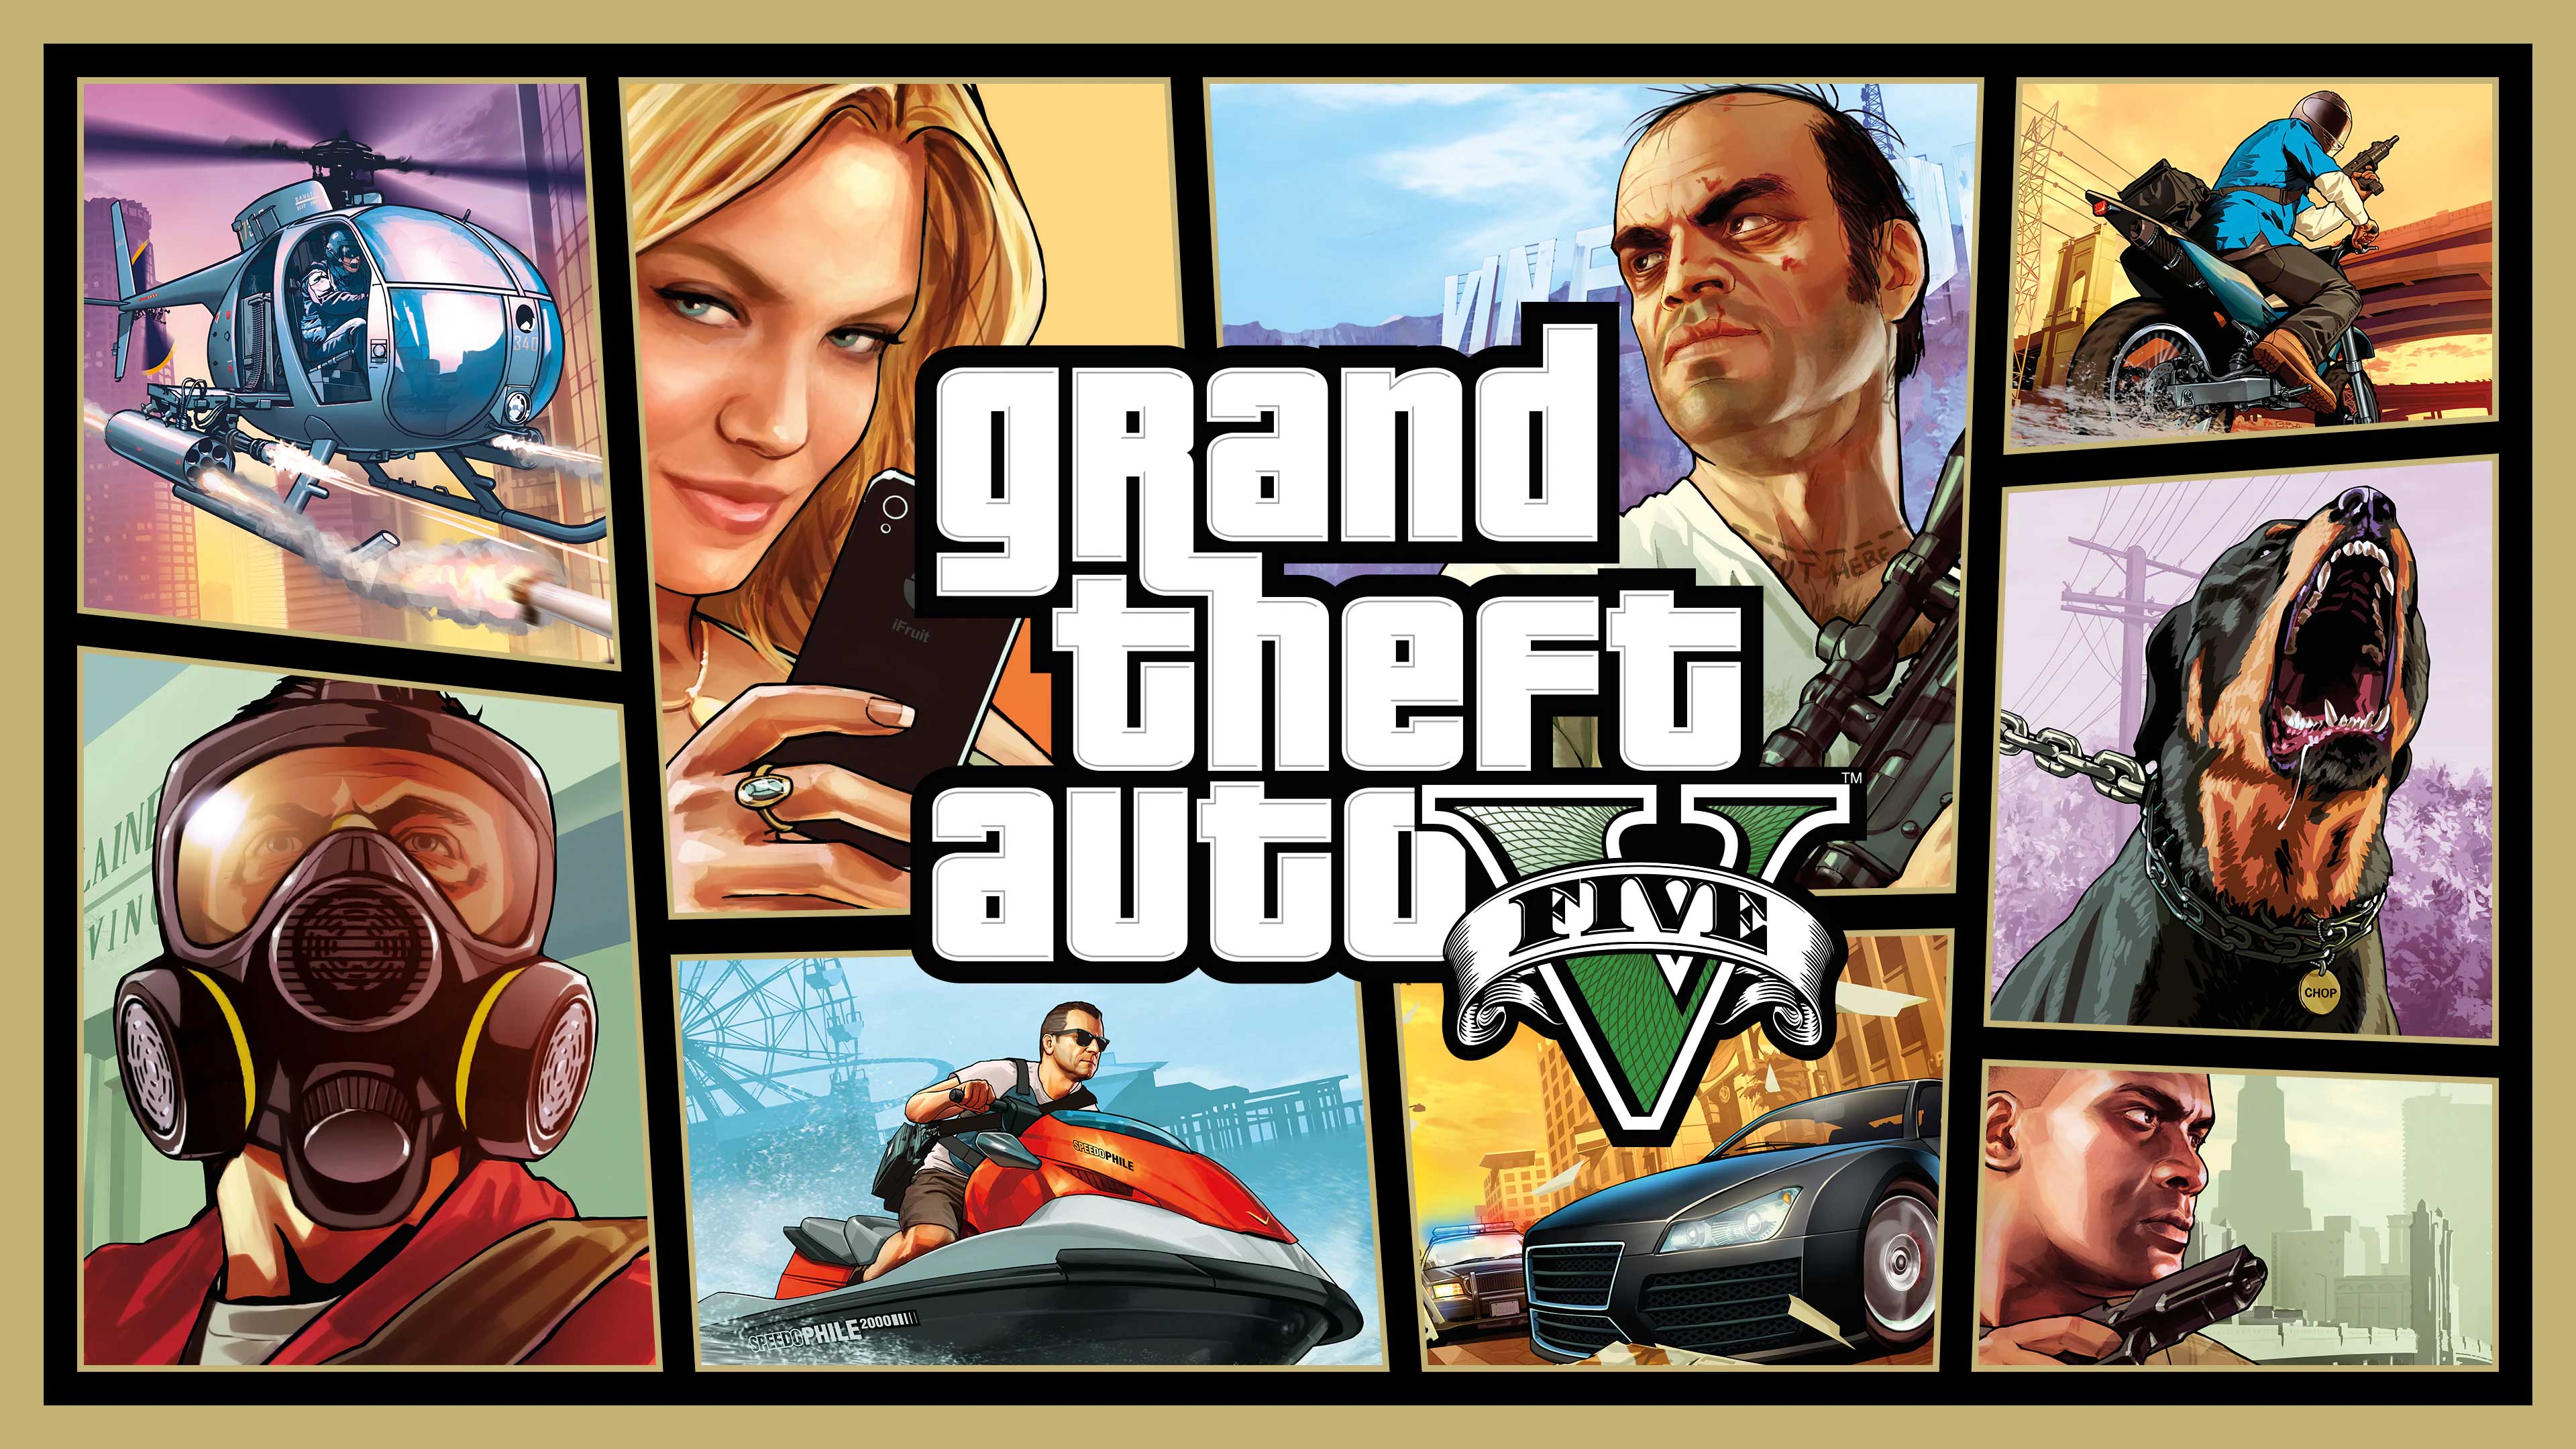 Grand Theft Auto V, Go Game A Lot, gogamealot.com